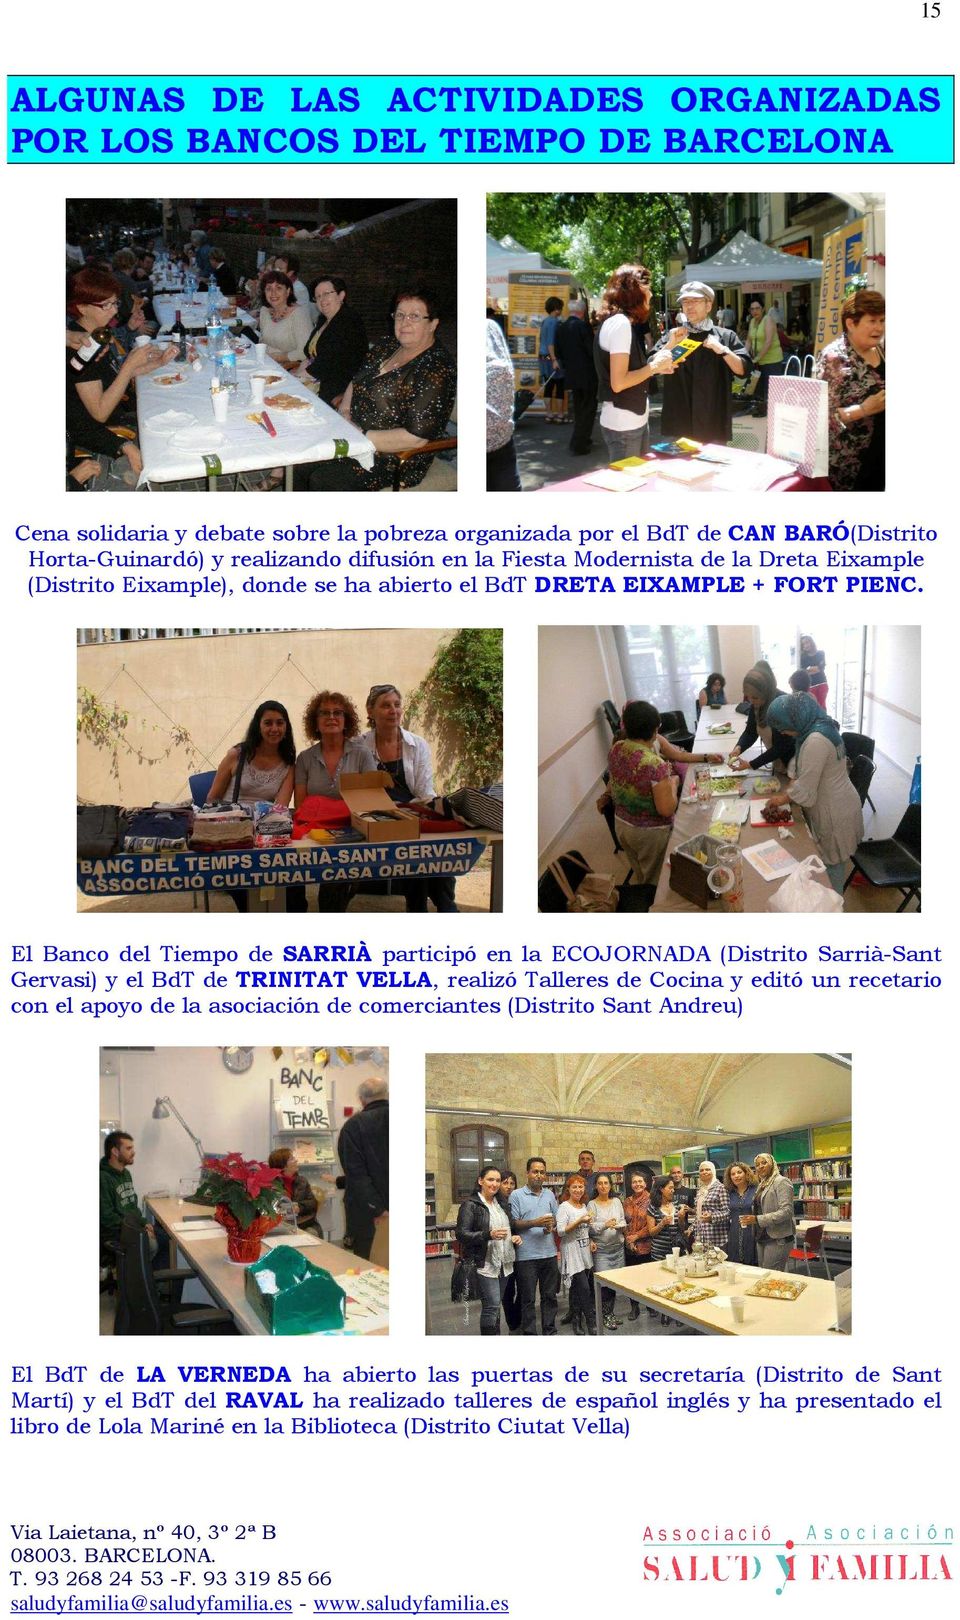 El Banco del Tiempo de SARRIÀ participó en la ECOJORNADA (Distrito Sarrià-Sant Gervasi) y el BdT de TRINITAT VELLA, realizó Talleres de Cocina y editó un recetario con el apoyo de la asociación de